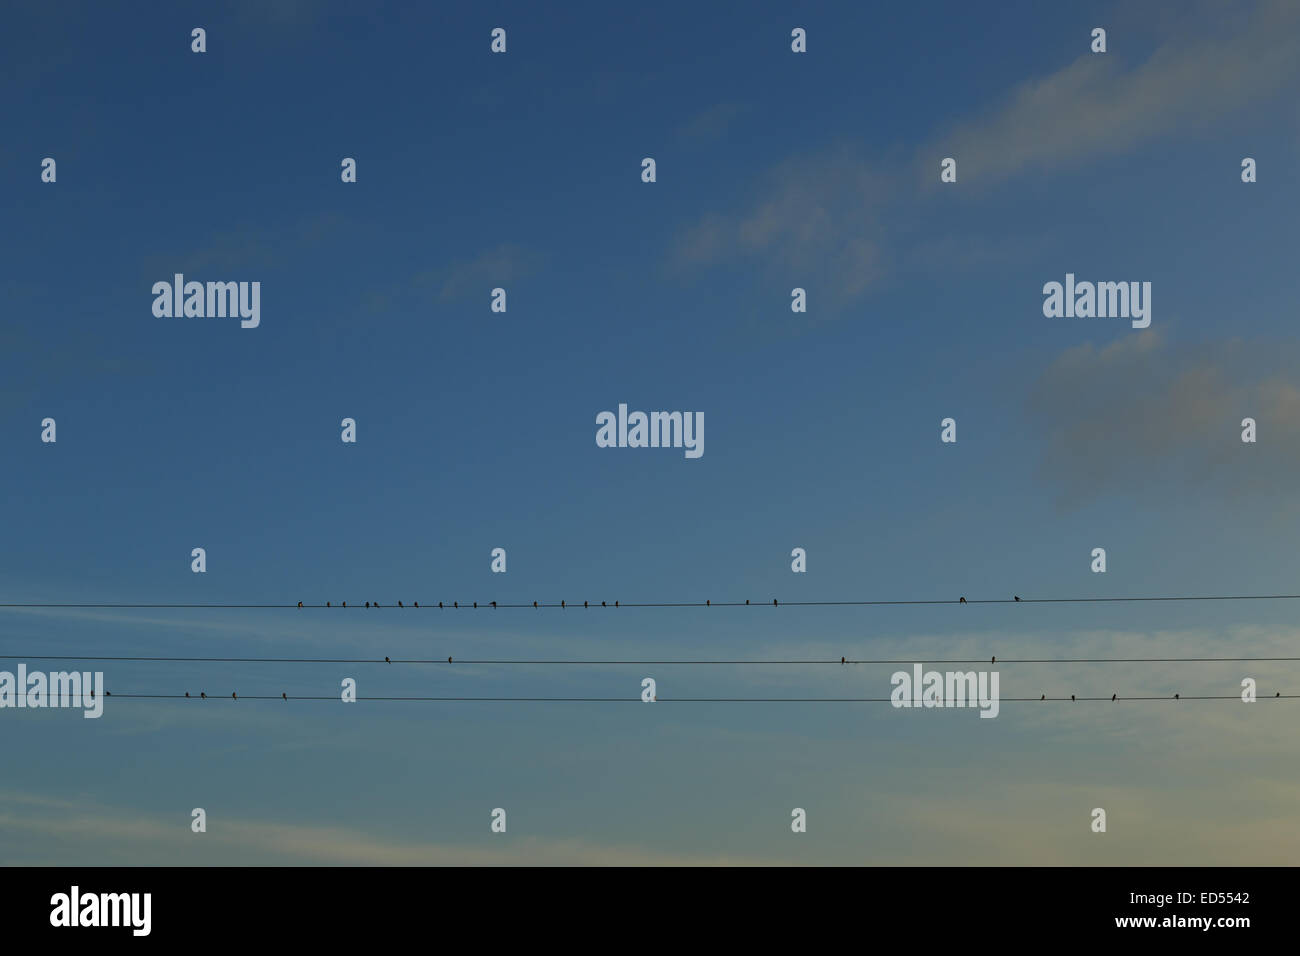 Ein Foto von einem Schwarm Schwalben aufgereiht auf einige Stromleitungen, erstellen eine künstlerische Kulisse gegen den blauen Himmel. Stockfoto